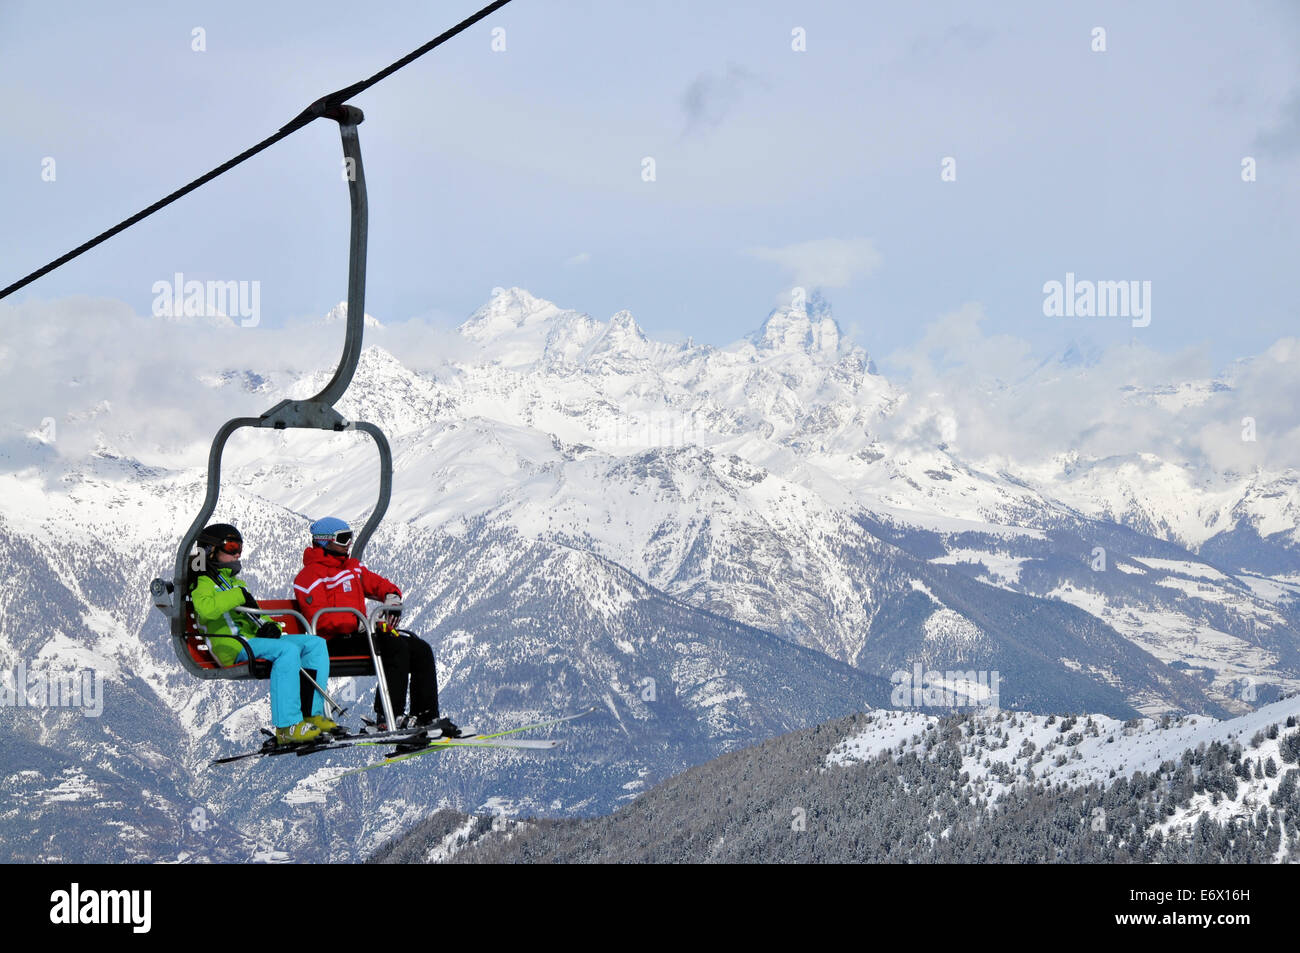 Zwei Personen in einem Skilift, Skigebiet Pila, Aosta mit Matterhorn, Aostatal, Italien Stockfoto